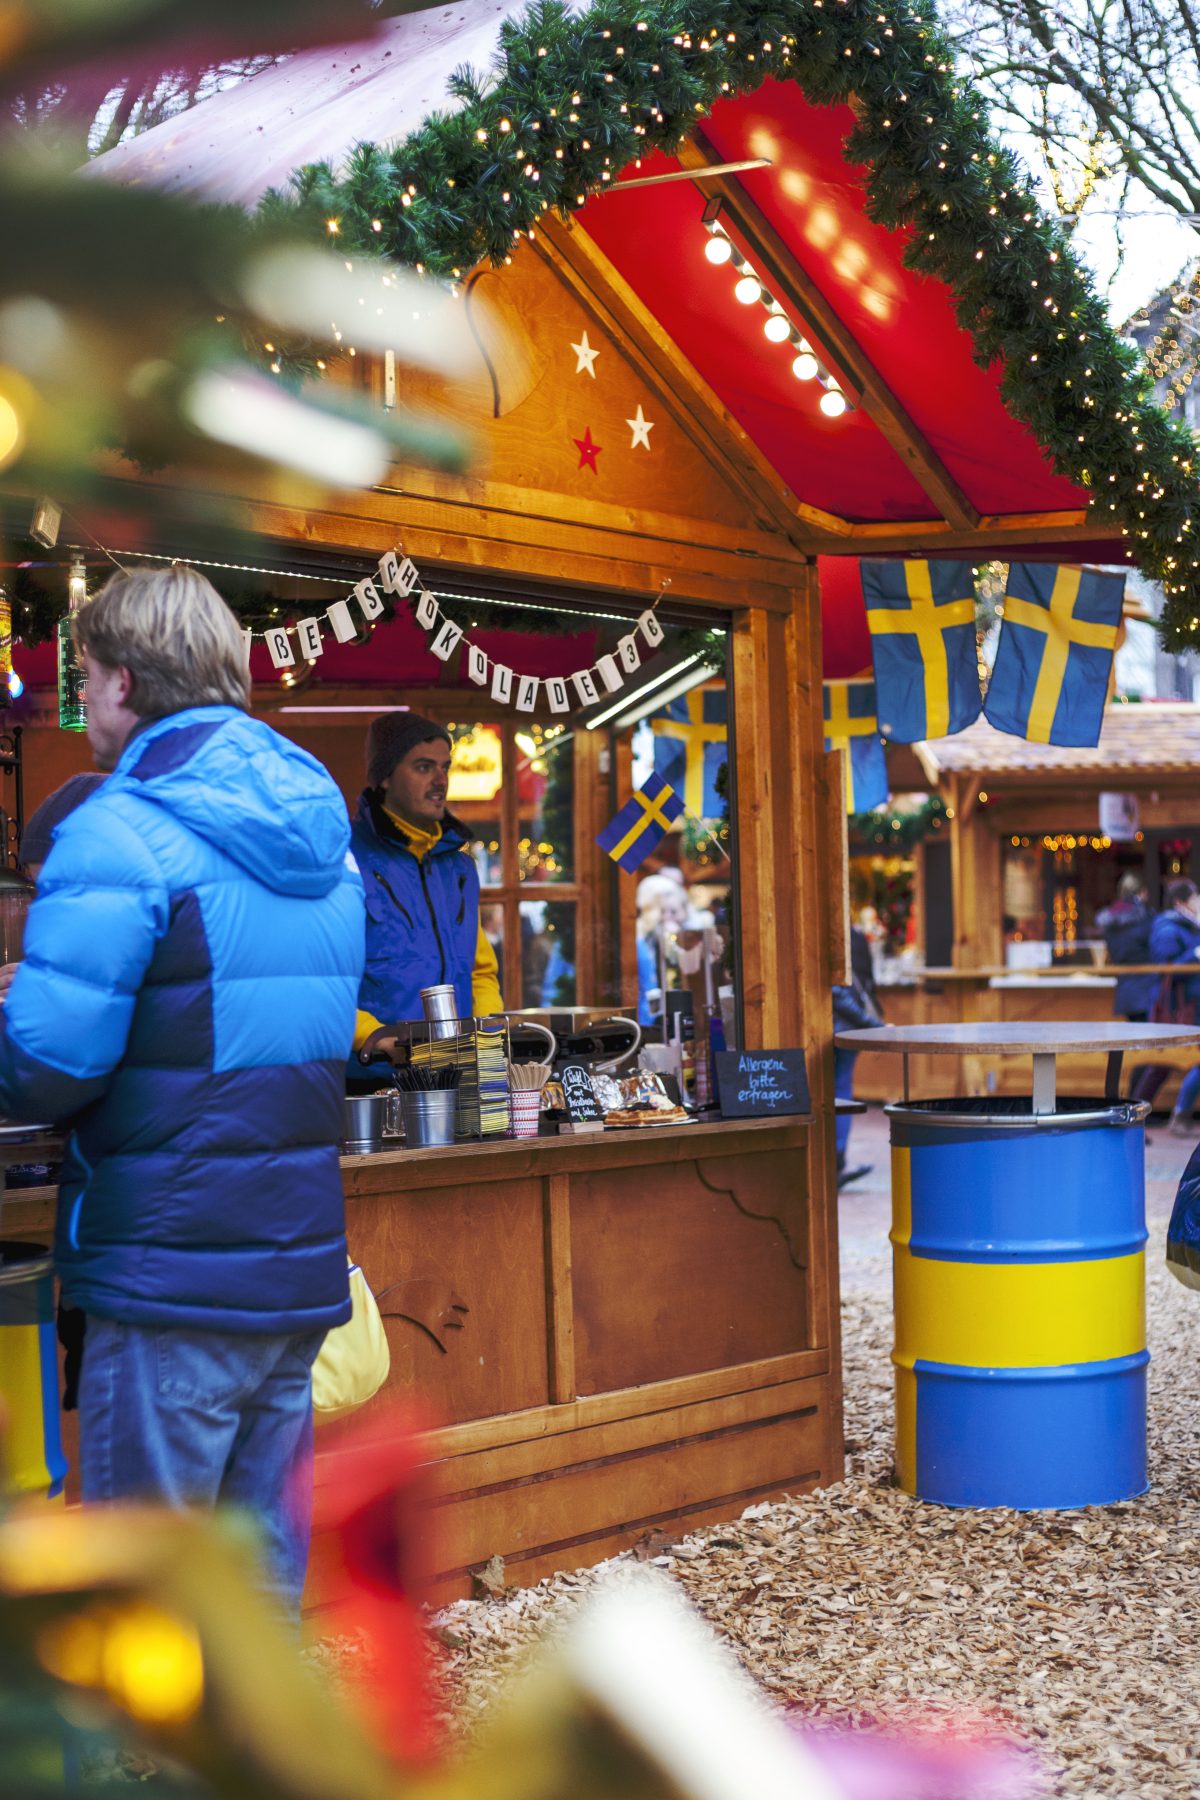 Schwedenhuette-Bude-Weihnachtsmarkt-Kiel-Elchburger-Koetbulla-waffel-heisseschokolade-nachhaltig-regional